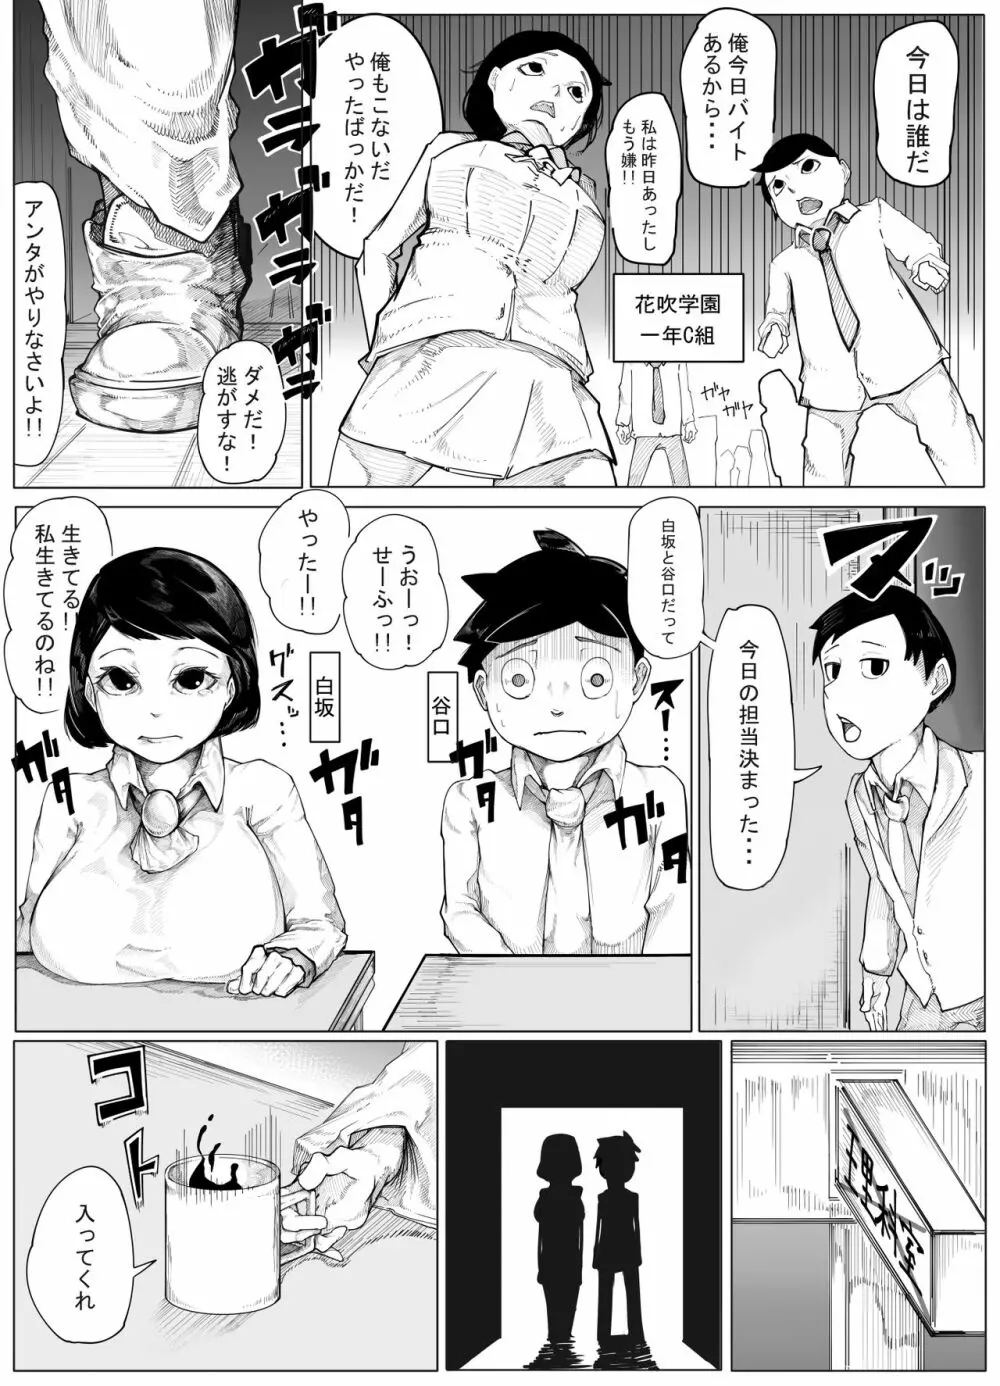 オリジナルエロ漫画 - 同人誌 - エロ漫画 - NyaHentai